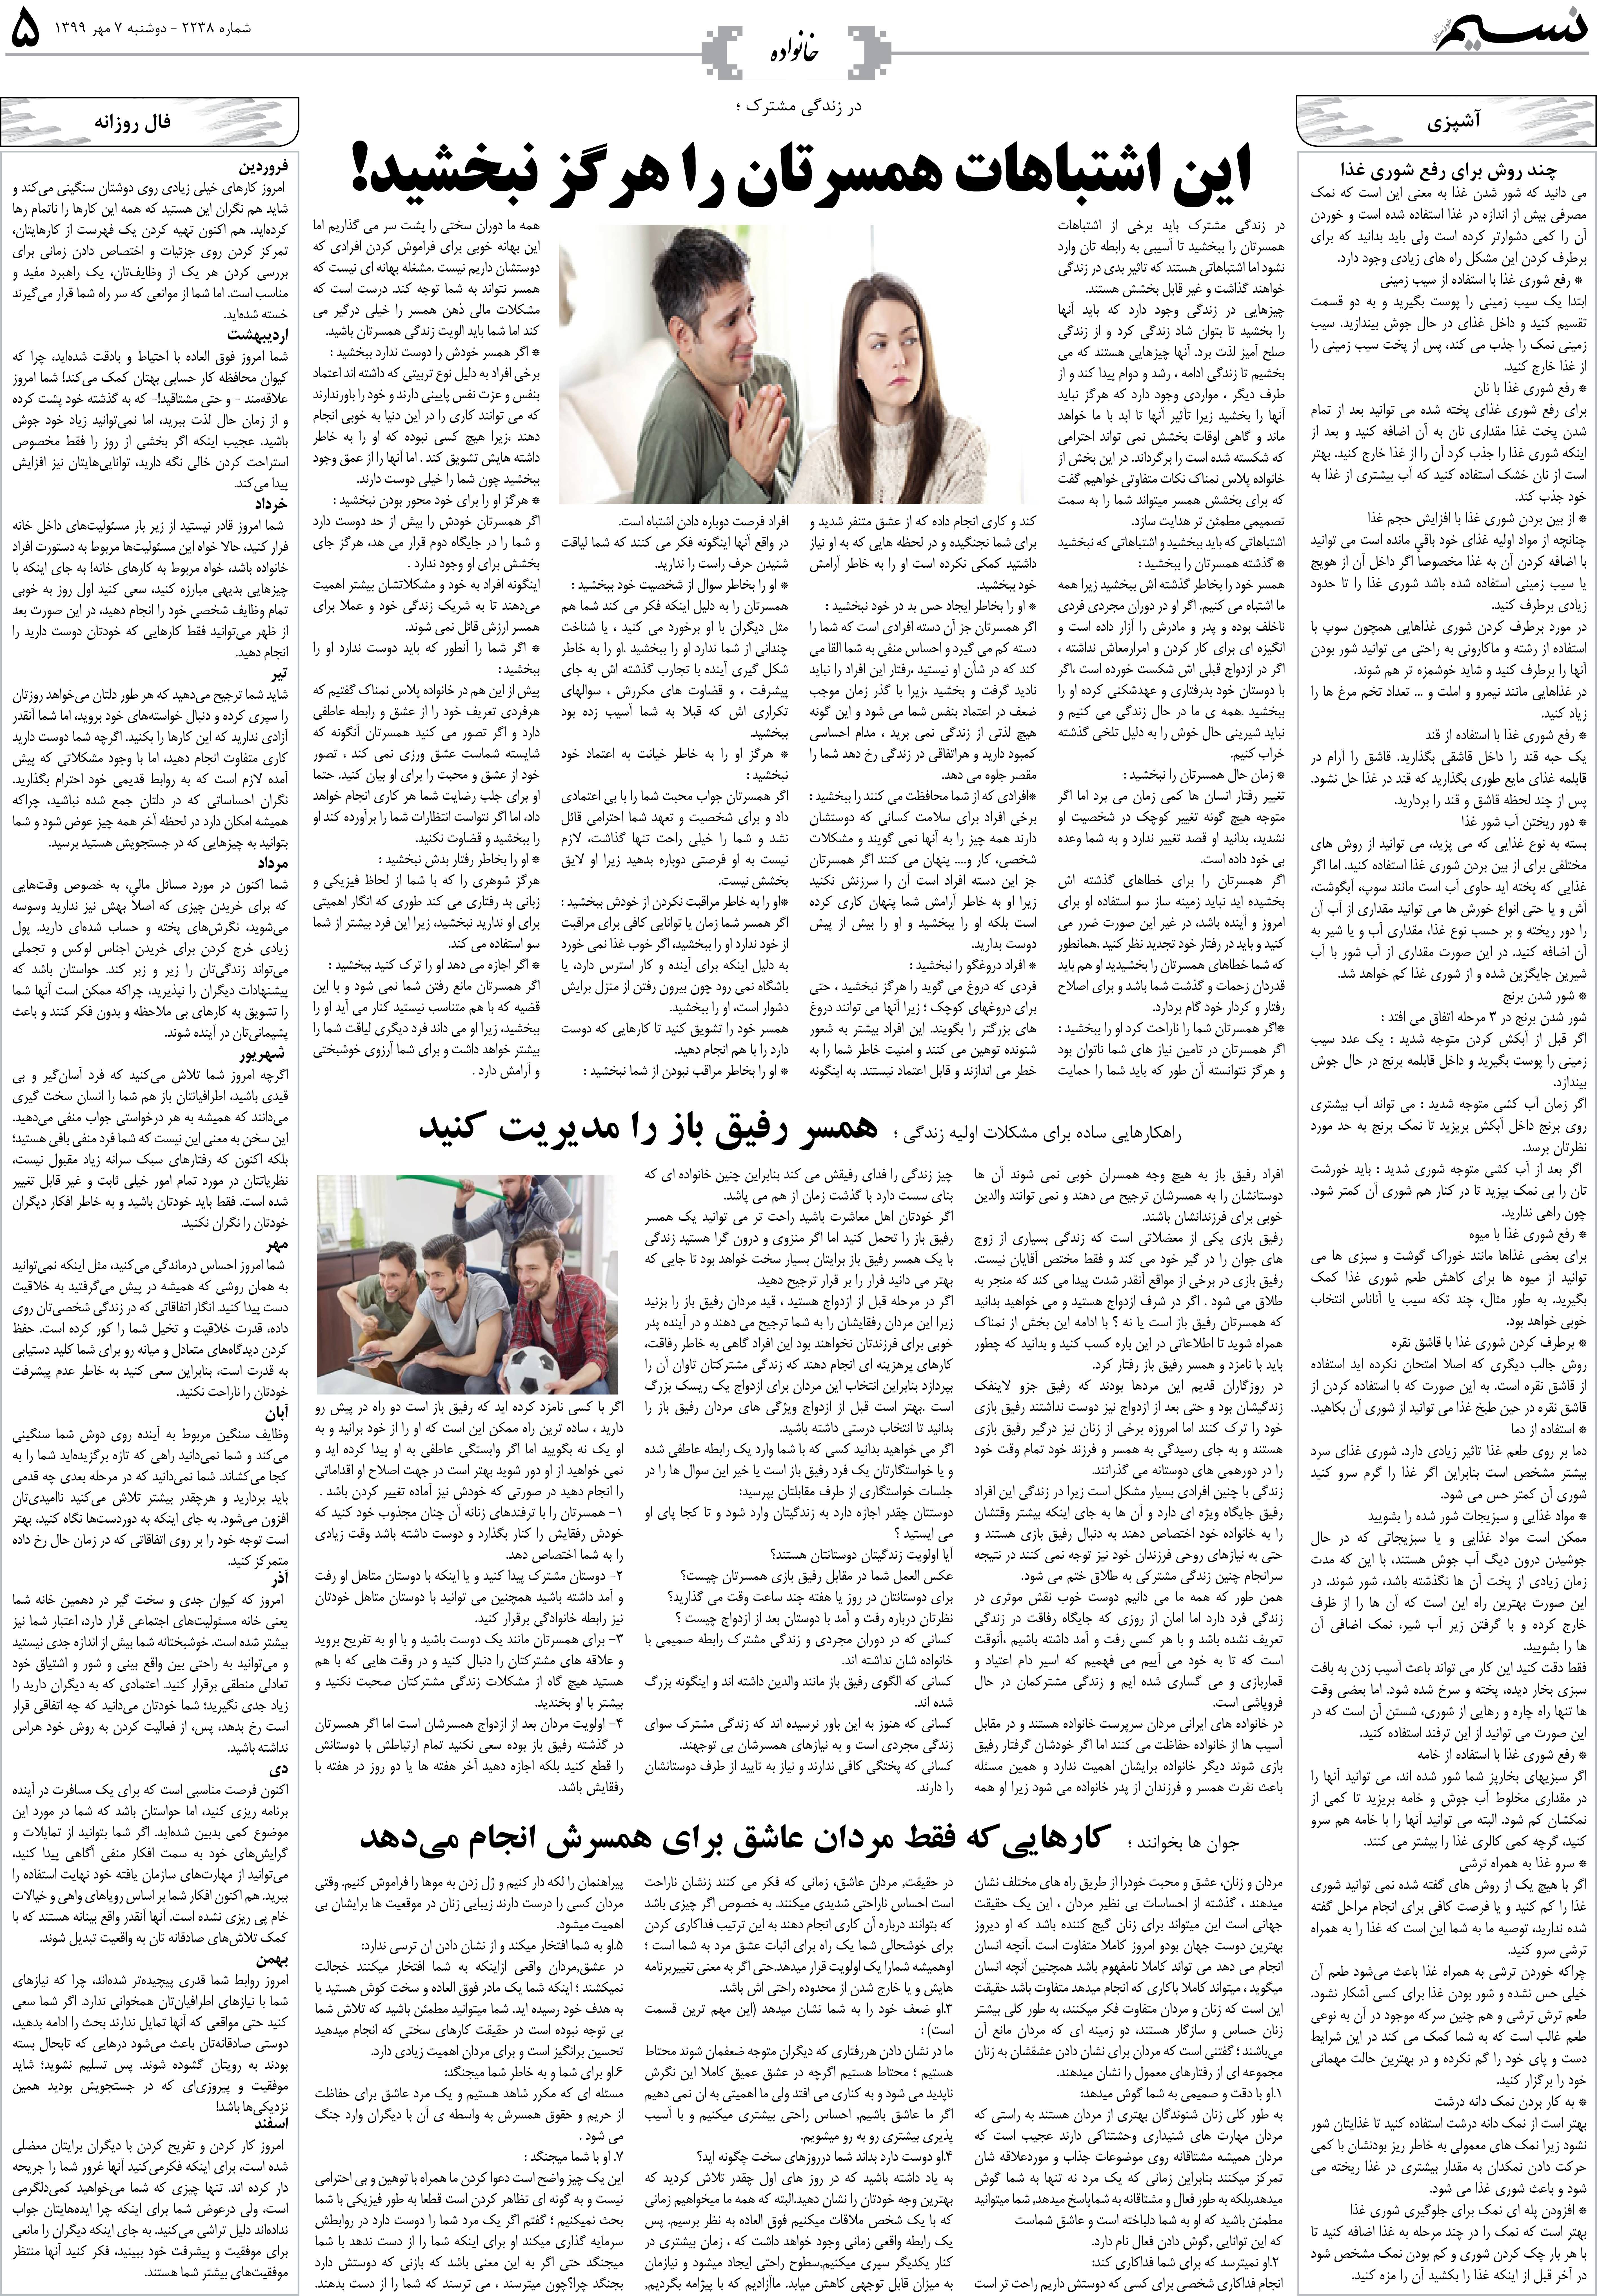 صفحه خانواده روزنامه نسیم شماره 2238